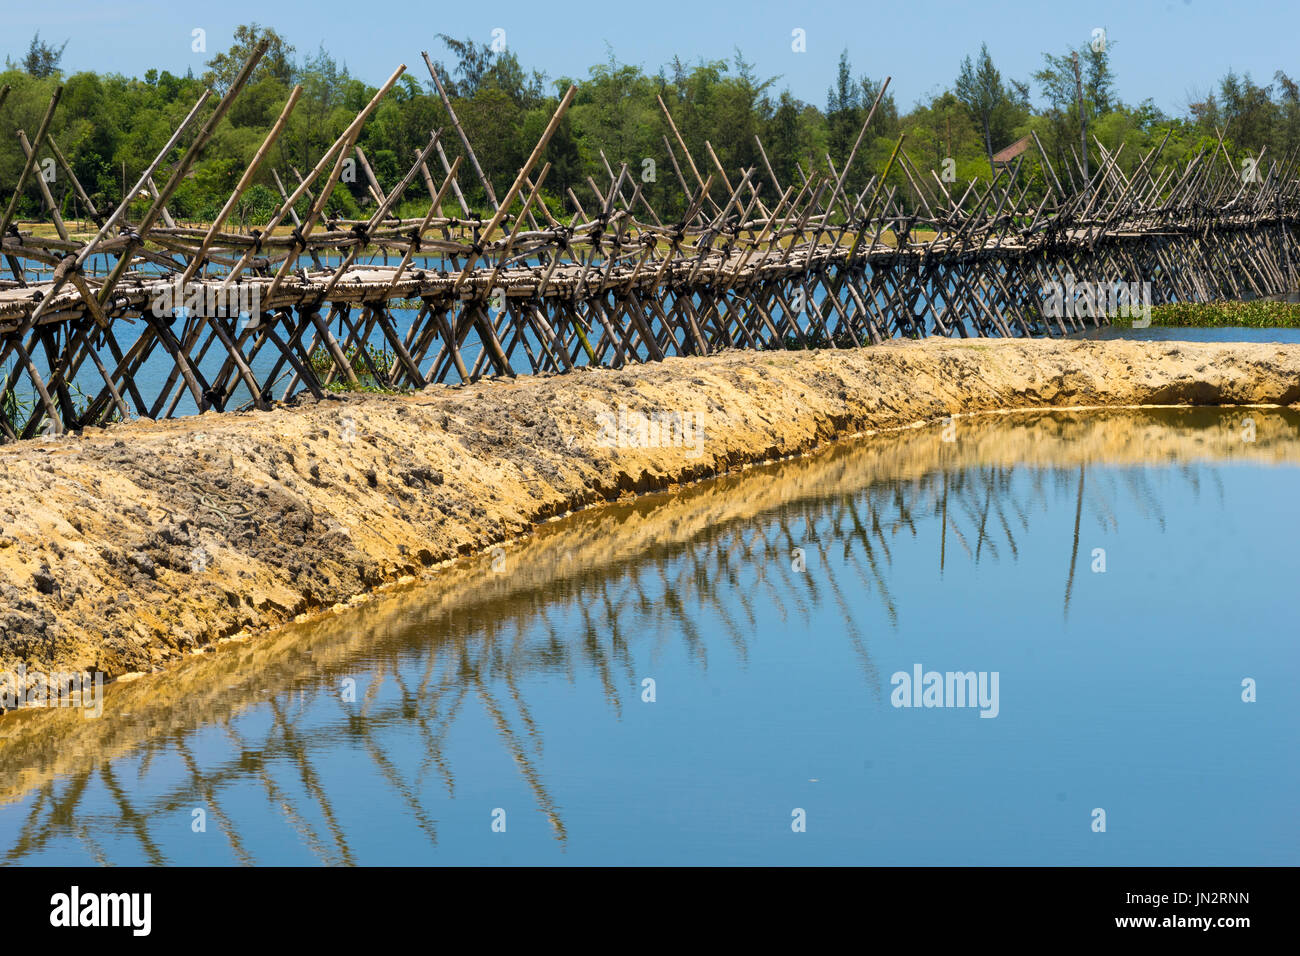 Puente de bambú tradicional a través del lago cerca de Hoi An, Vietnam Foto de stock